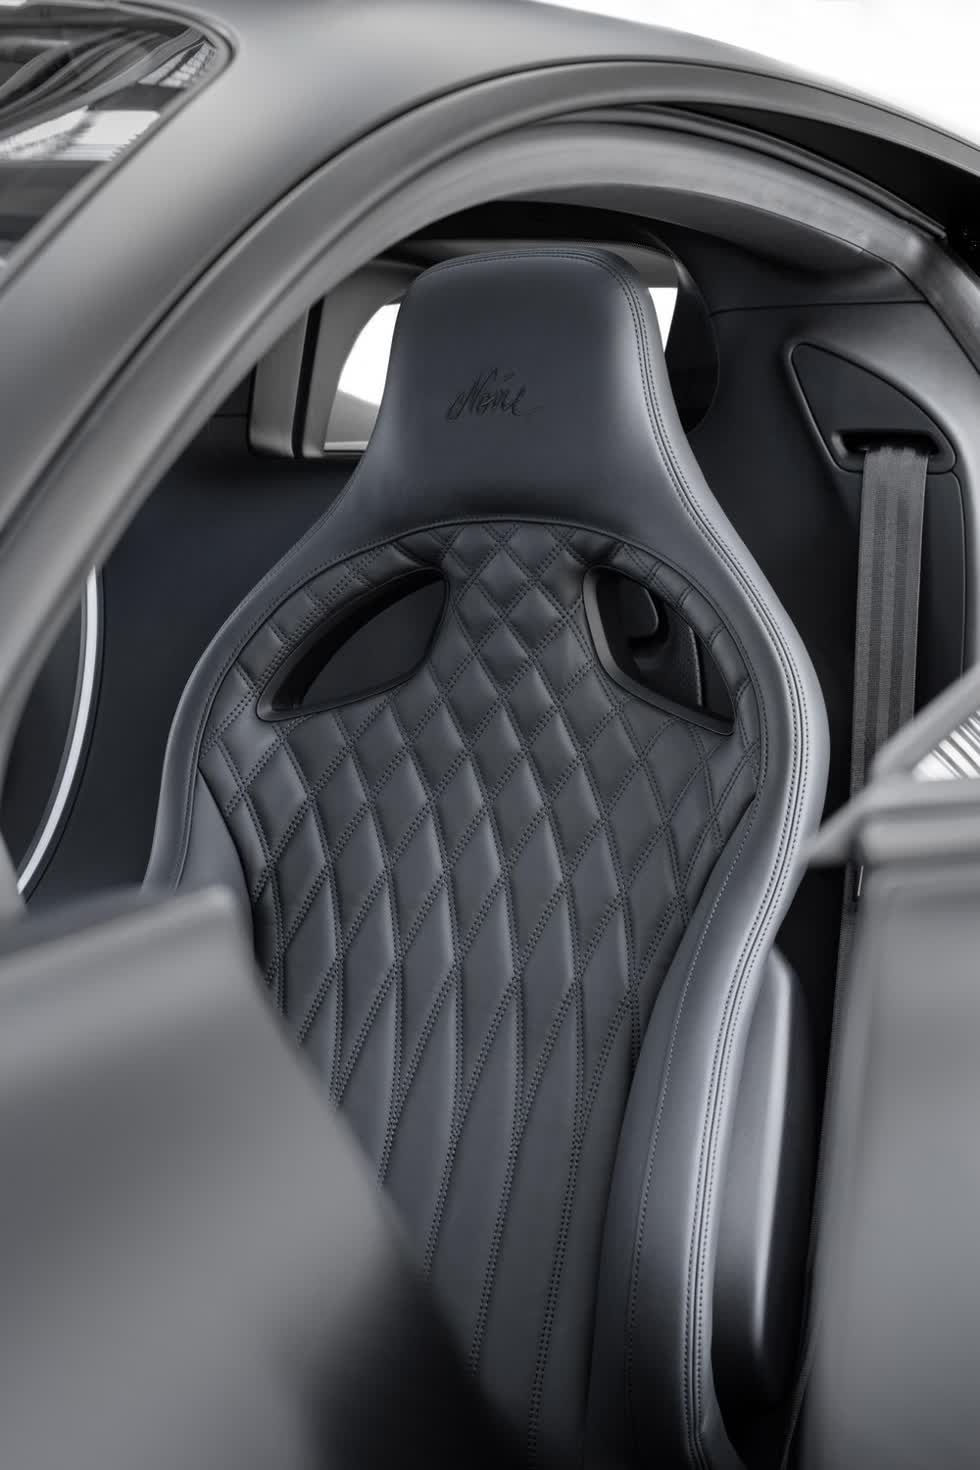 Ghế ngồi thể thao của Bugatti Chiron Sport Noire Sportive cũng có logo Noire trên tựa đầu ghế ngồi nhưng thú vị là hoàn thành màu đen thay vì màu nổi như các phiên bản khác thường làm để tạo sự đối lập.